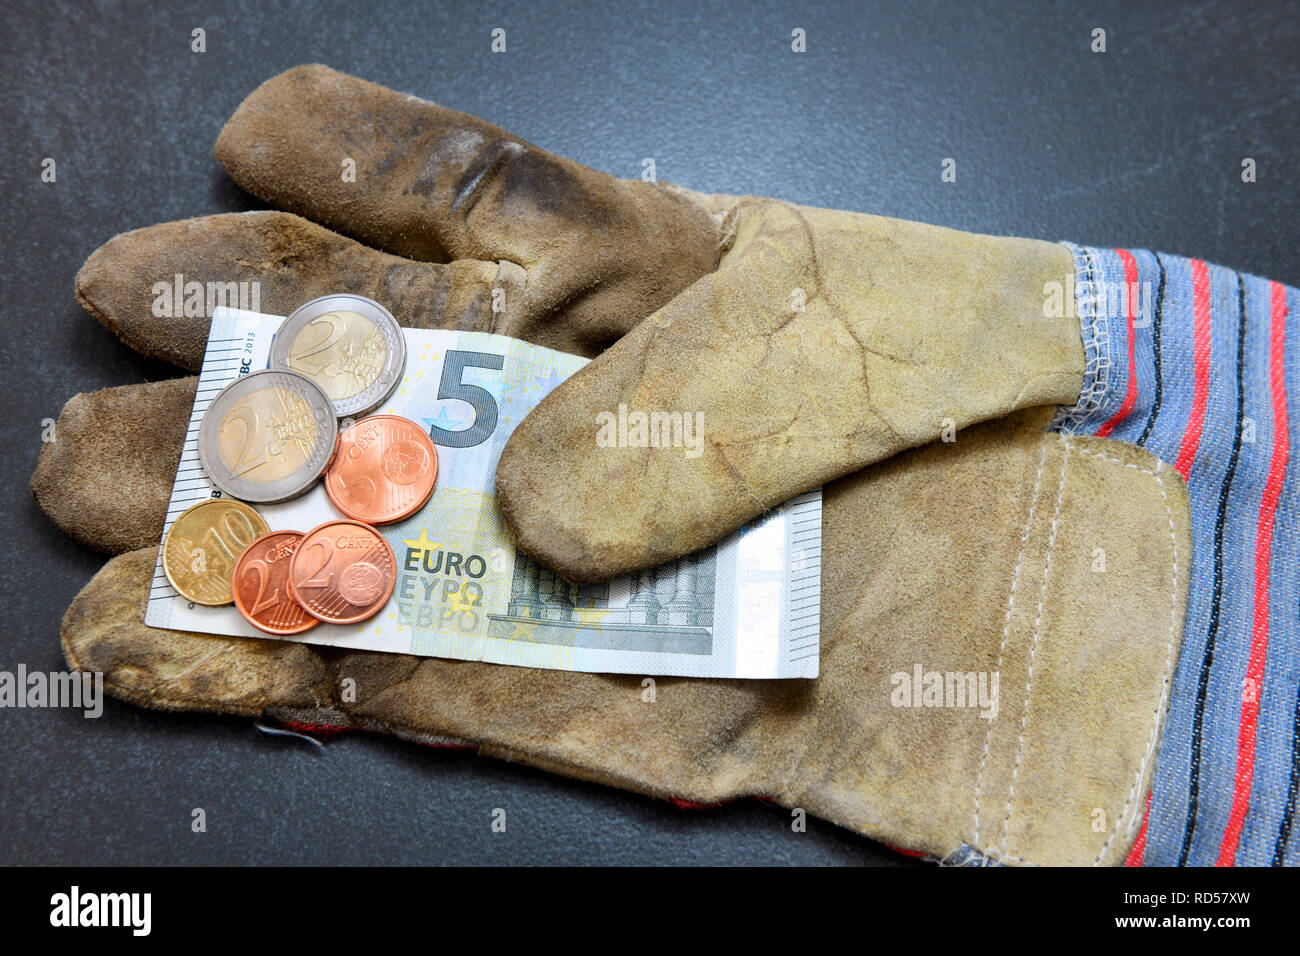 Working glove with 9.19 euros of minimum wage, Arbeitshandschuh mit 9,19 Euro Mindestlohn Stock Photo